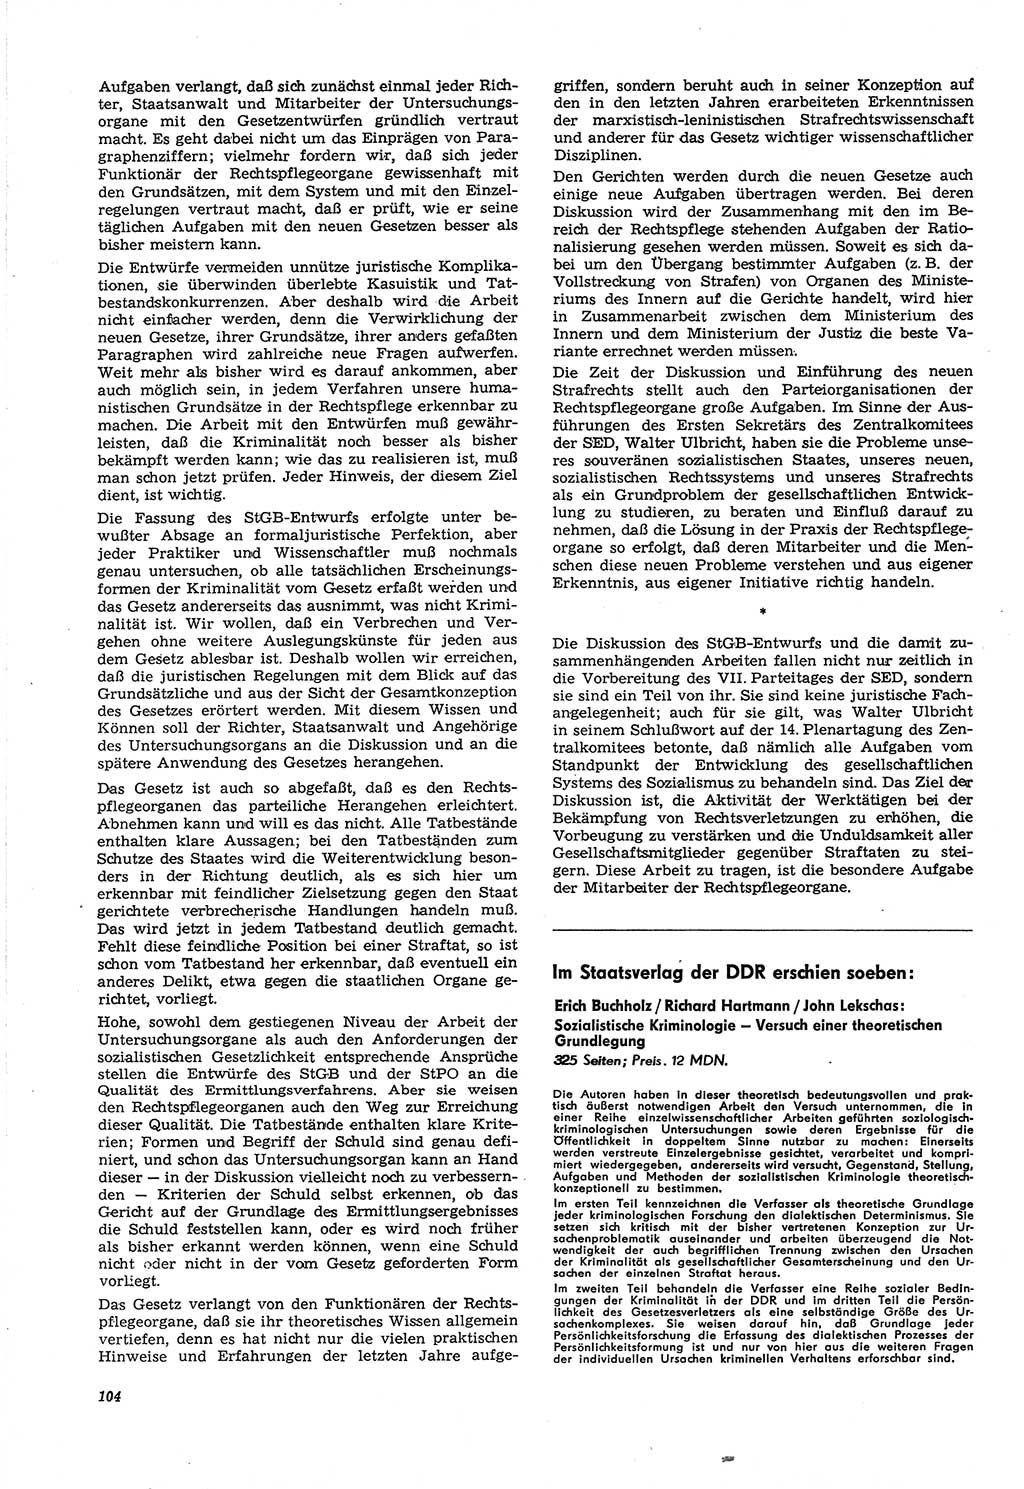 Neue Justiz (NJ), Zeitschrift für Recht und Rechtswissenschaft [Deutsche Demokratische Republik (DDR)], 21. Jahrgang 1967, Seite 104 (NJ DDR 1967, S. 104)